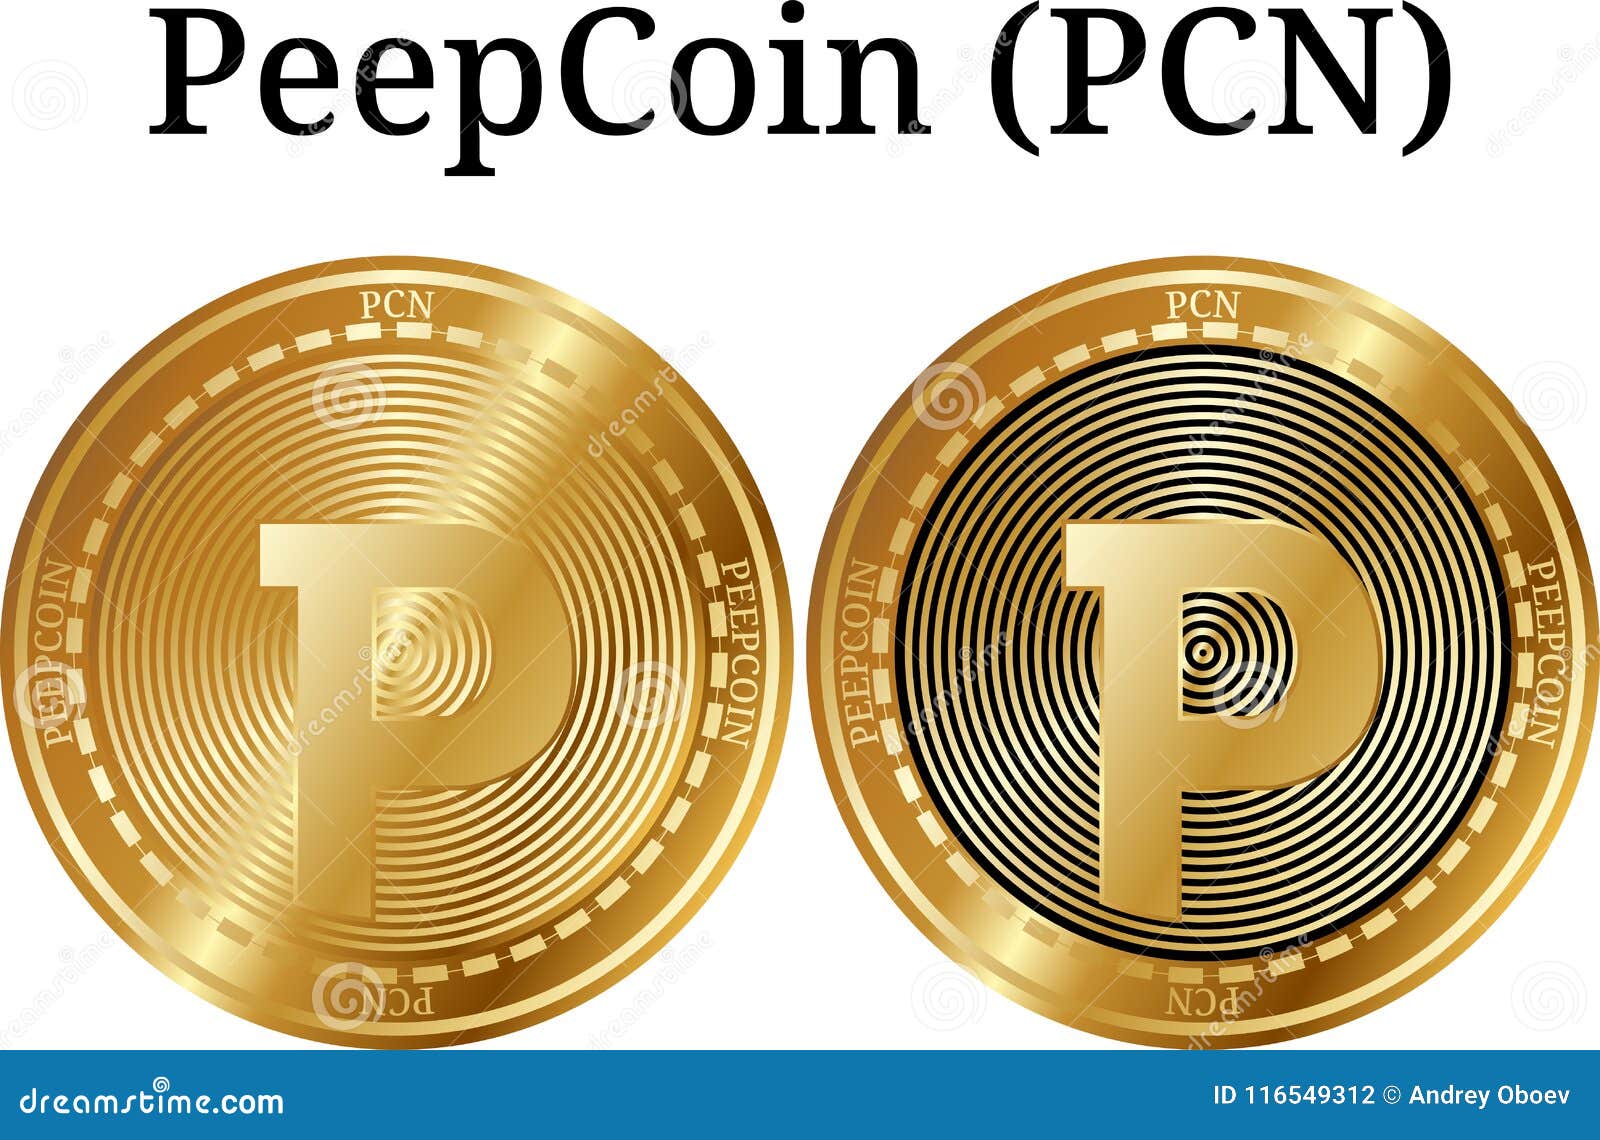 bitcoin a pc-n)